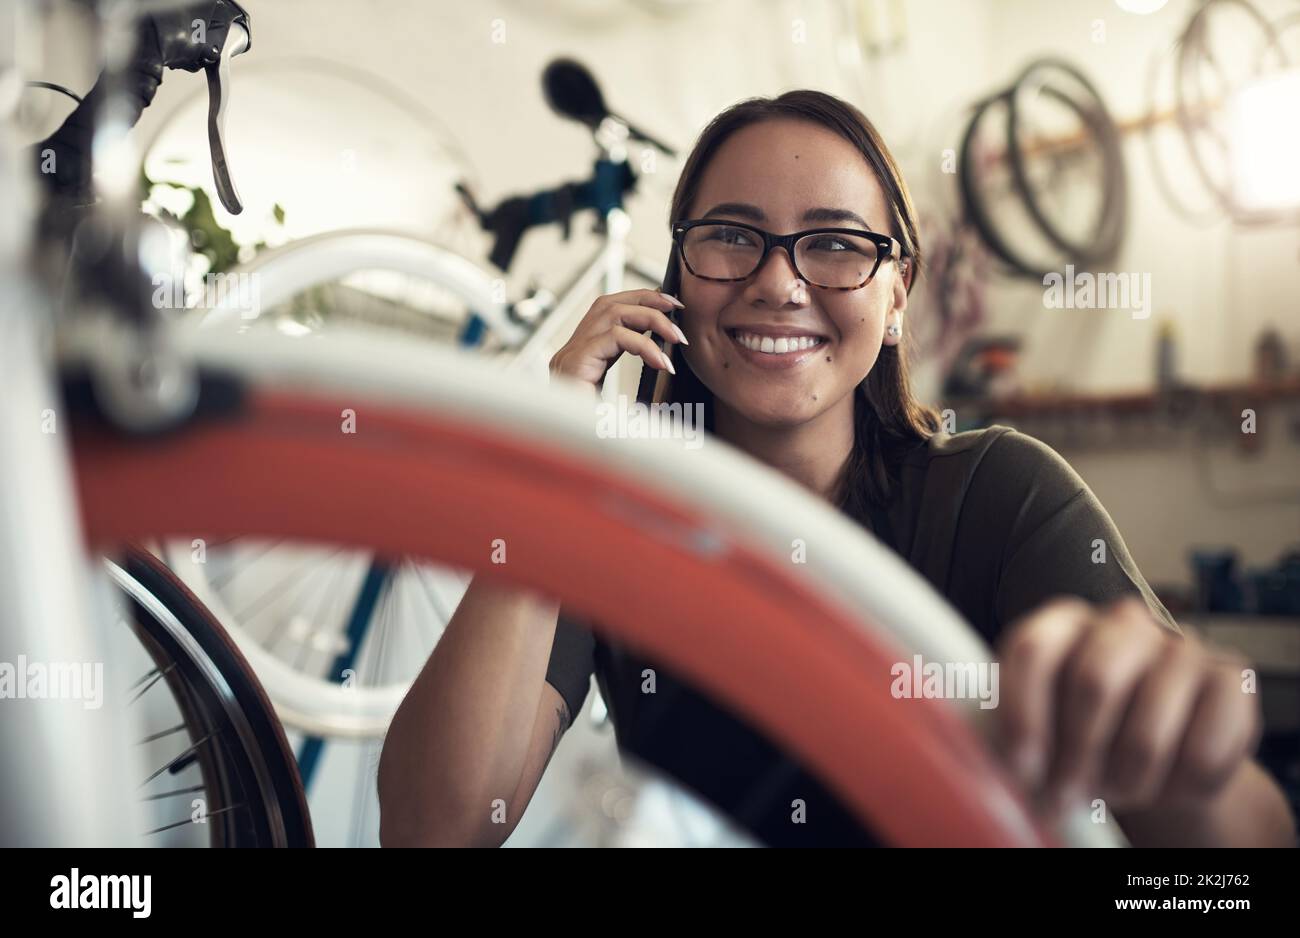 Il vous suffit d'appeler pour confirmer que nous avons bien reçu votre vélo. Prise de vue d'une jeune femme attirante qui s'est accroupie dans sa boutique de vélos et en utilisant son téléphone portable. Banque D'Images